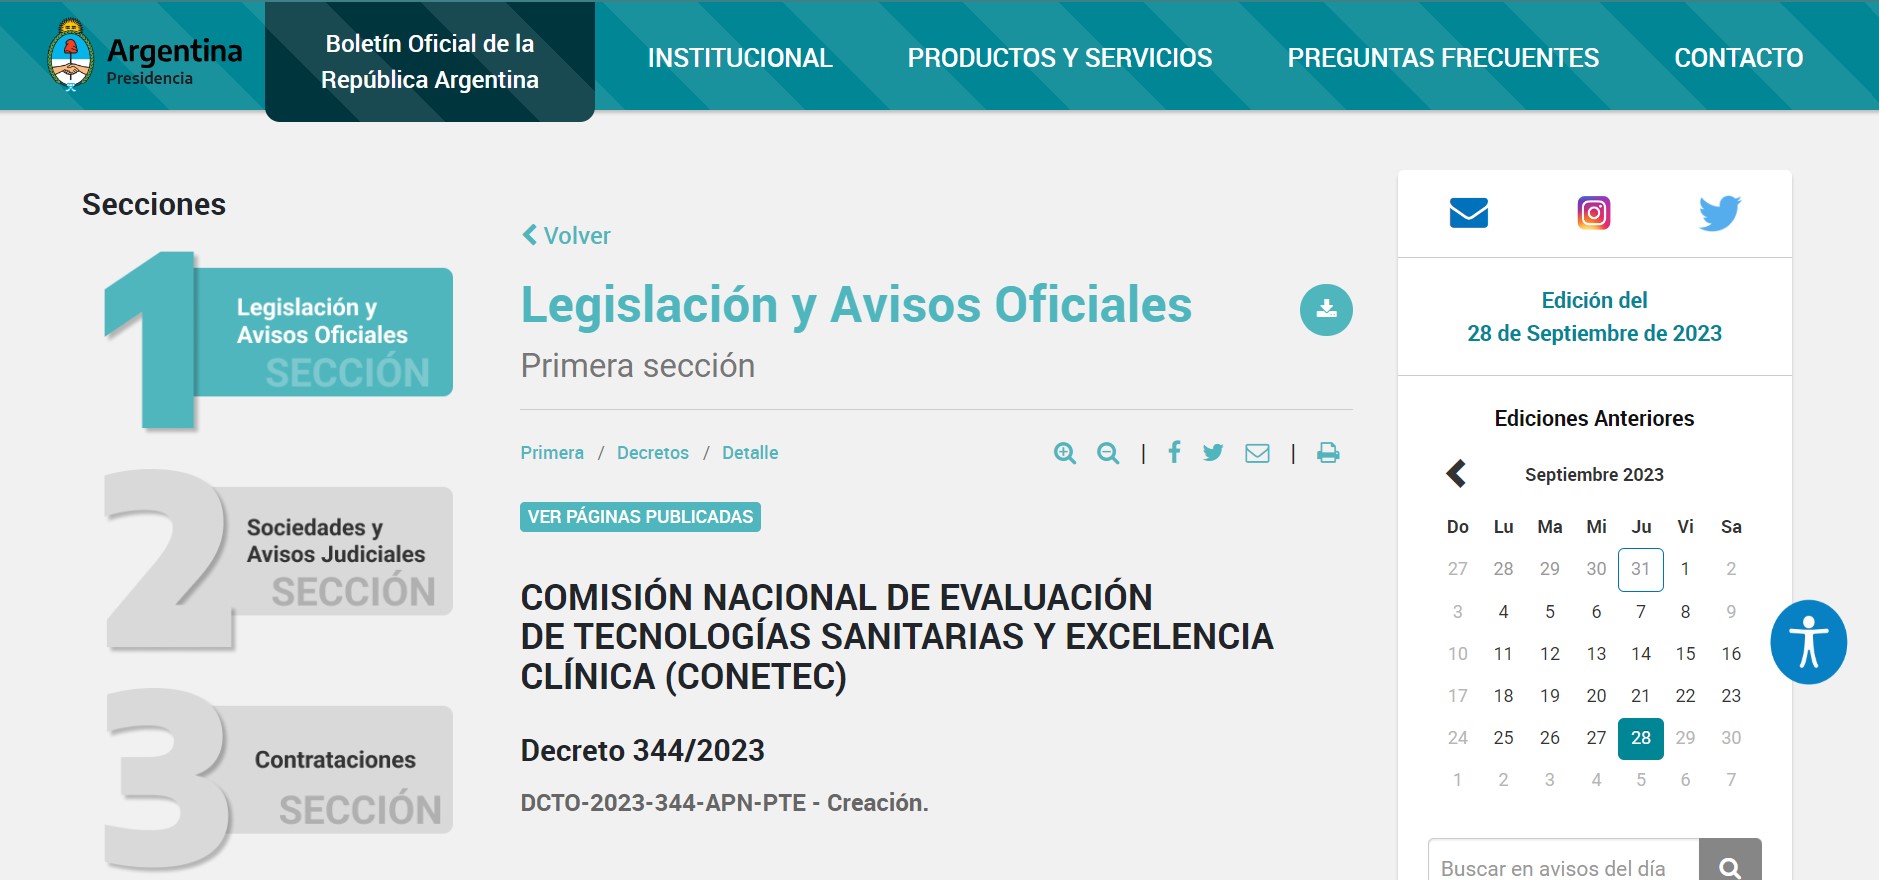 Argentina ordena la evaluación de tecnologías sanitarias y excelencia clínica